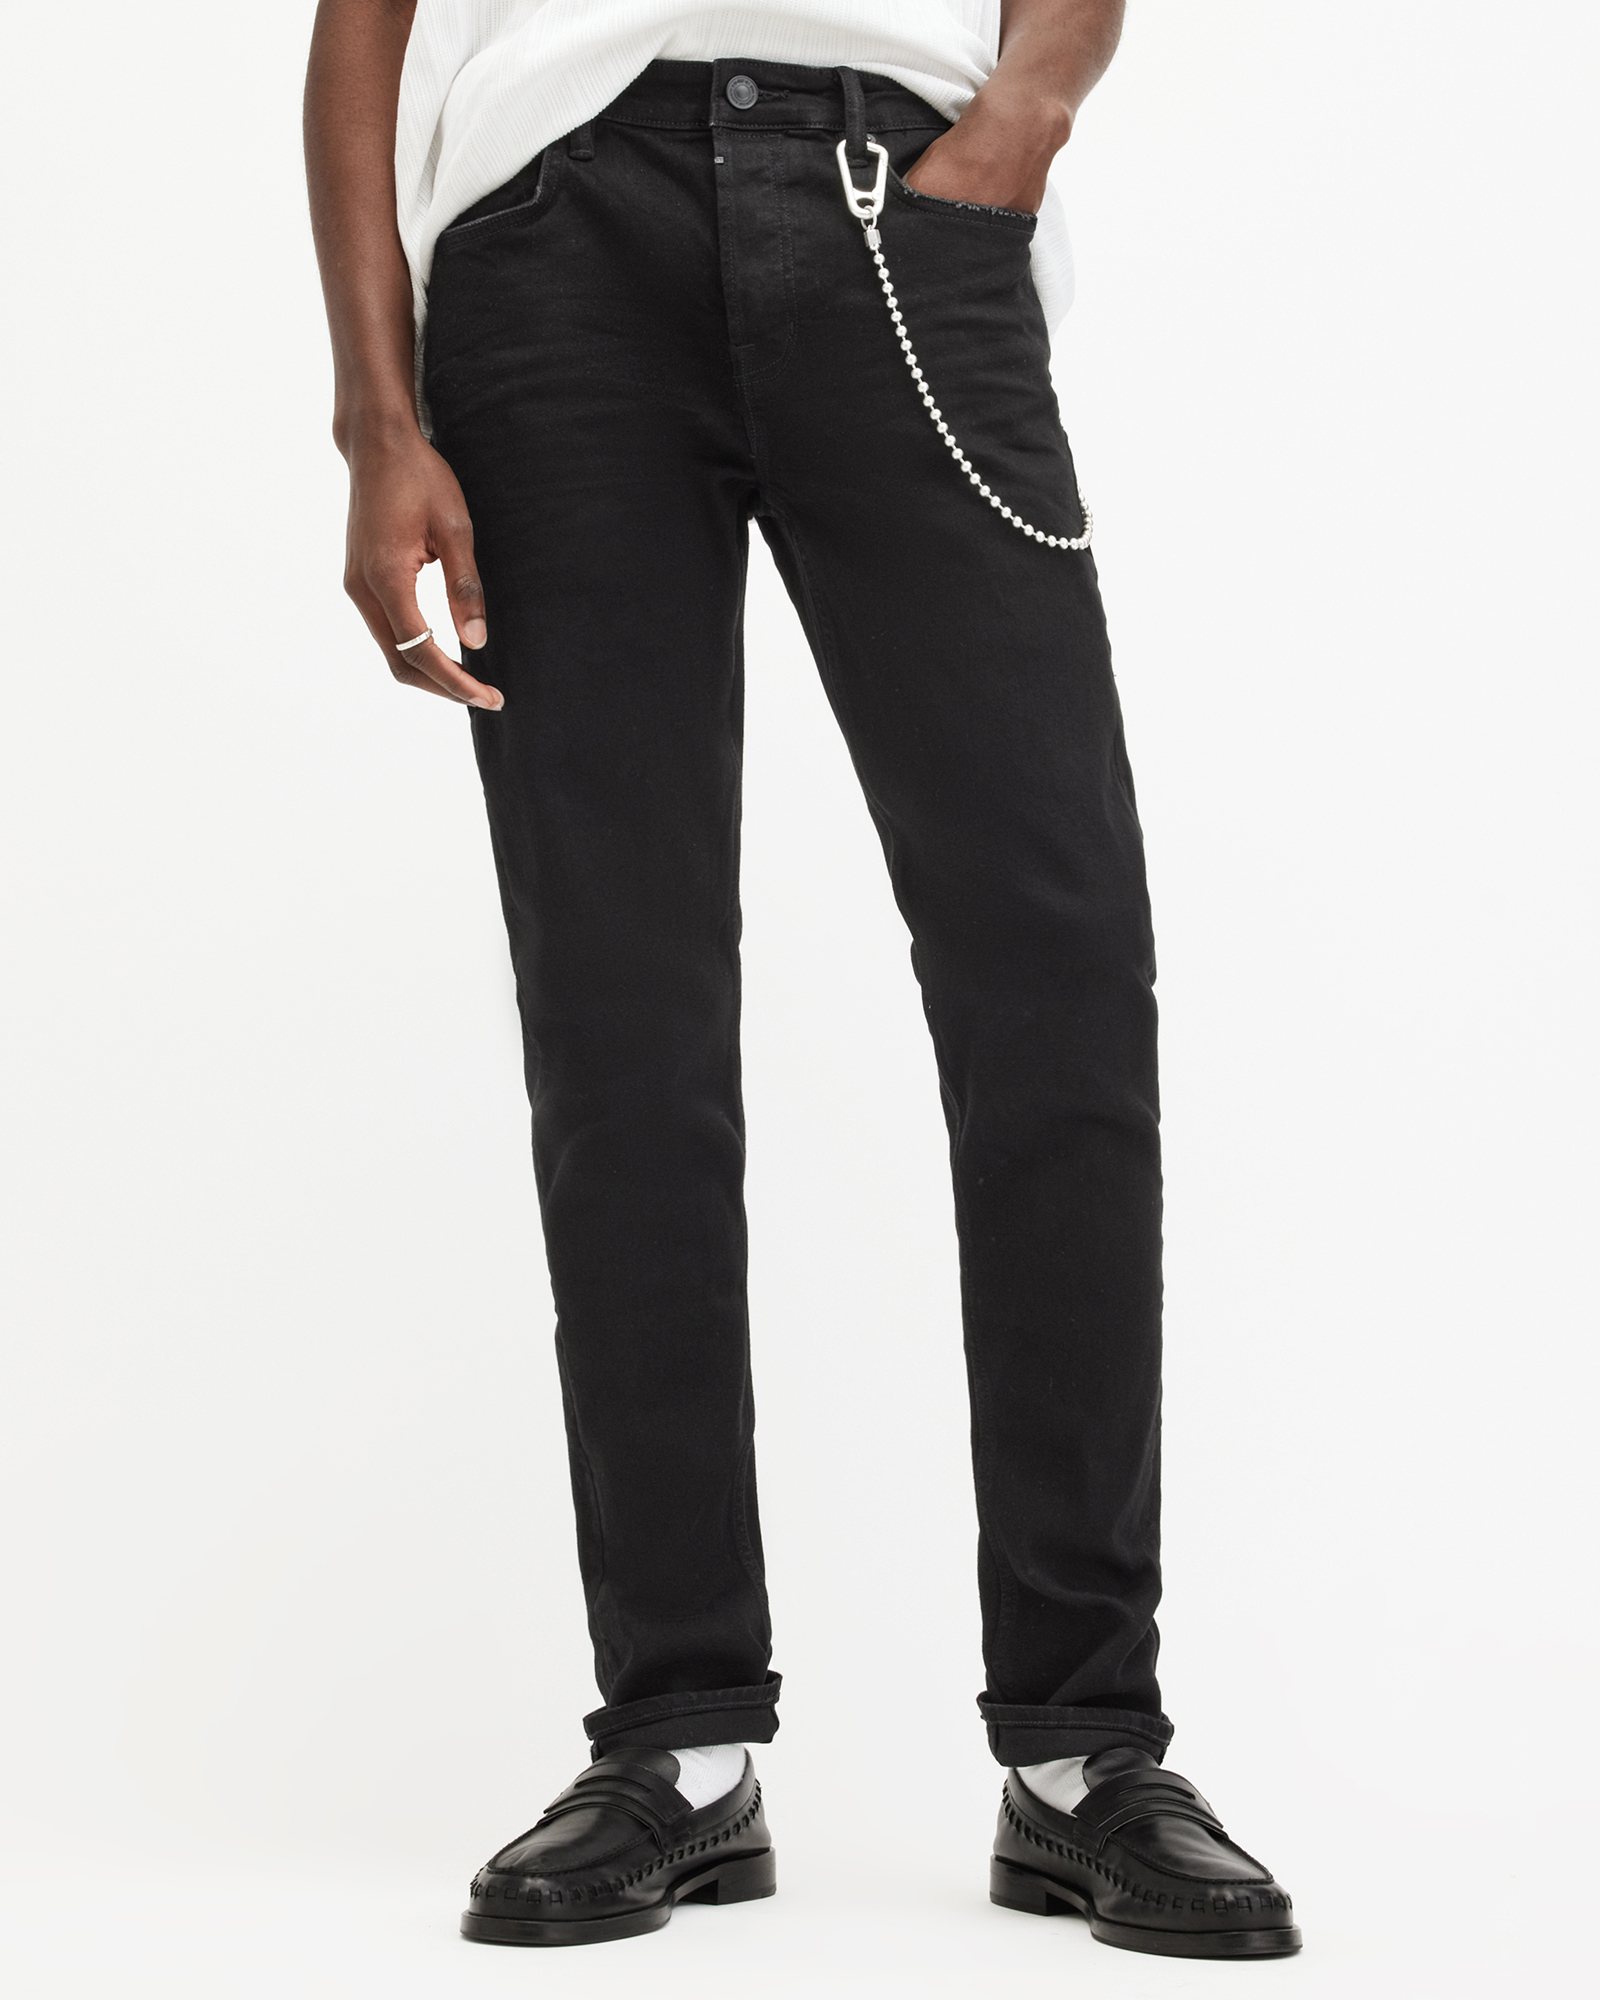 AllSaints Men's Cotton Traditional Cigarette Skinny Jeans, Black, Size: 30/L30